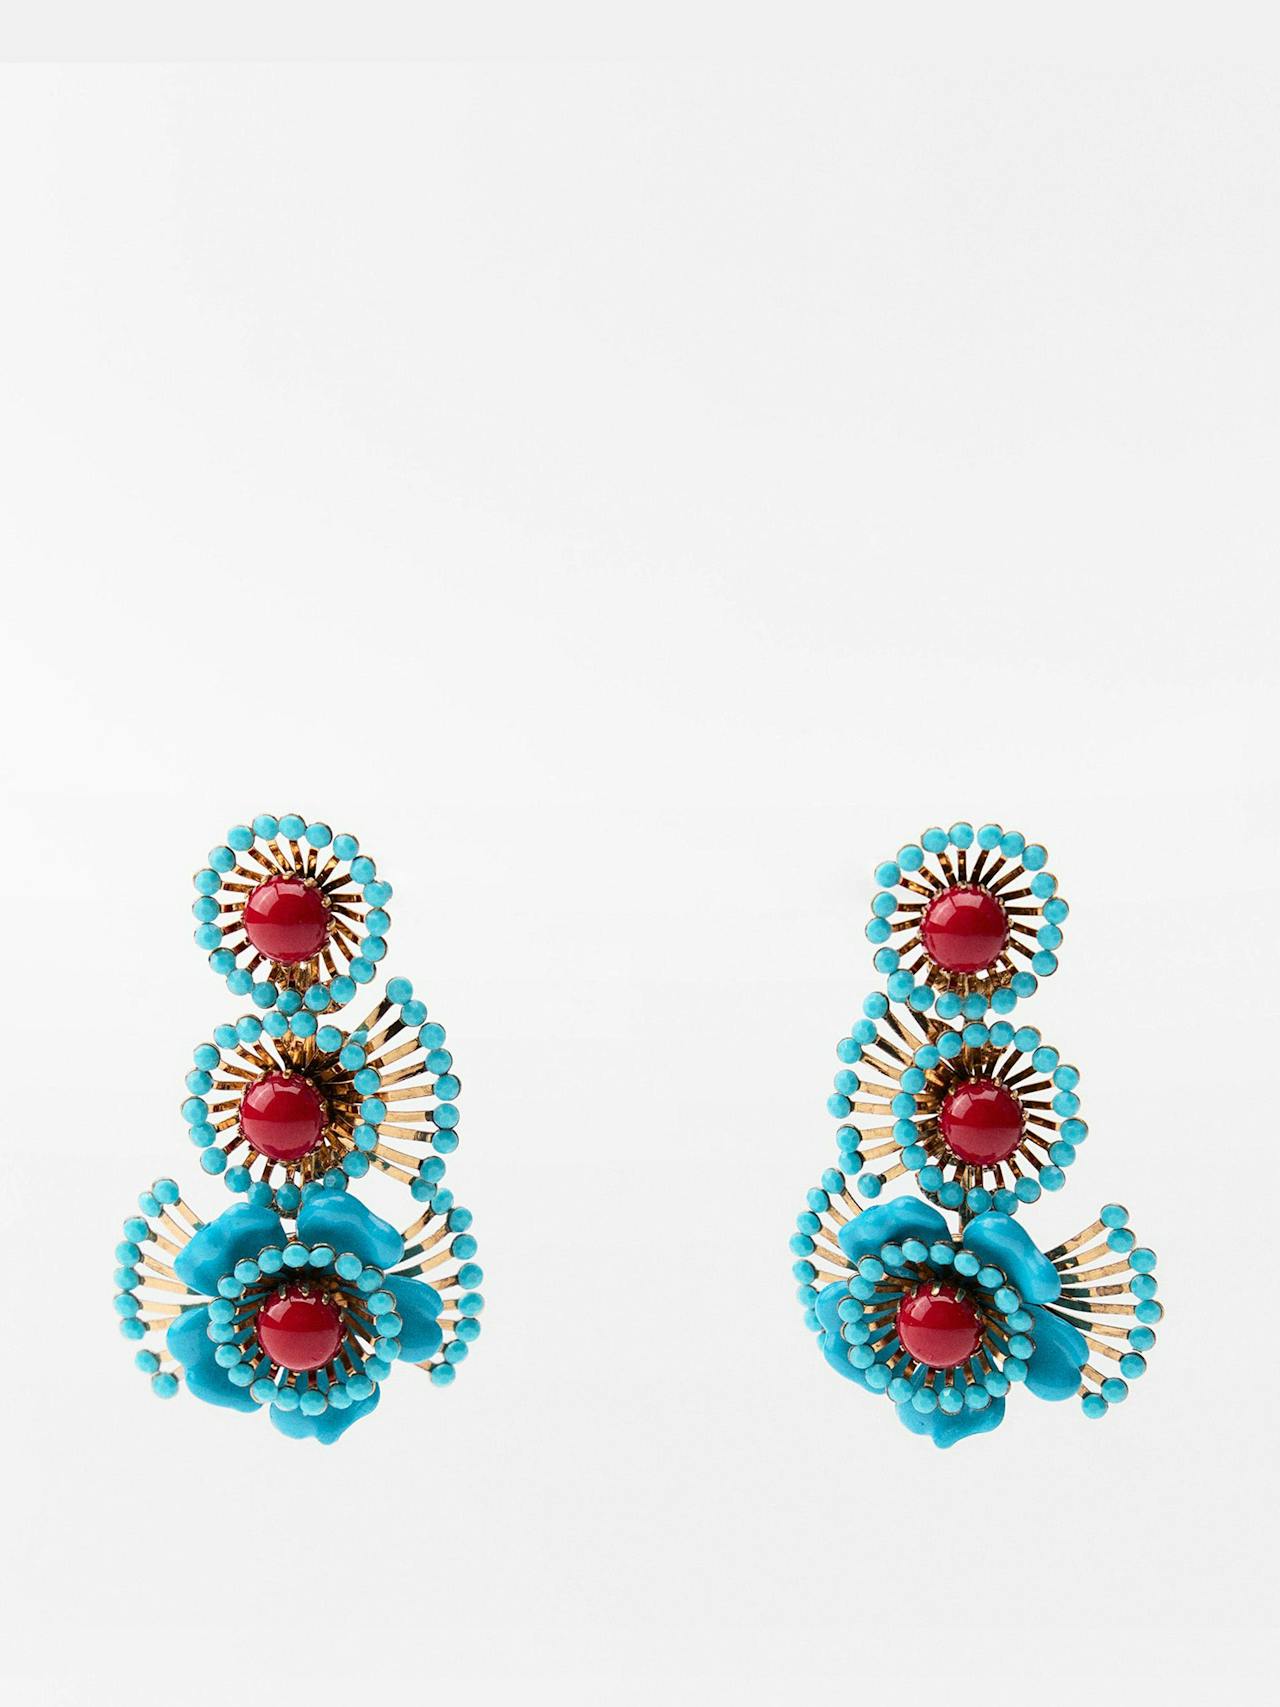 Beaded floral earrings